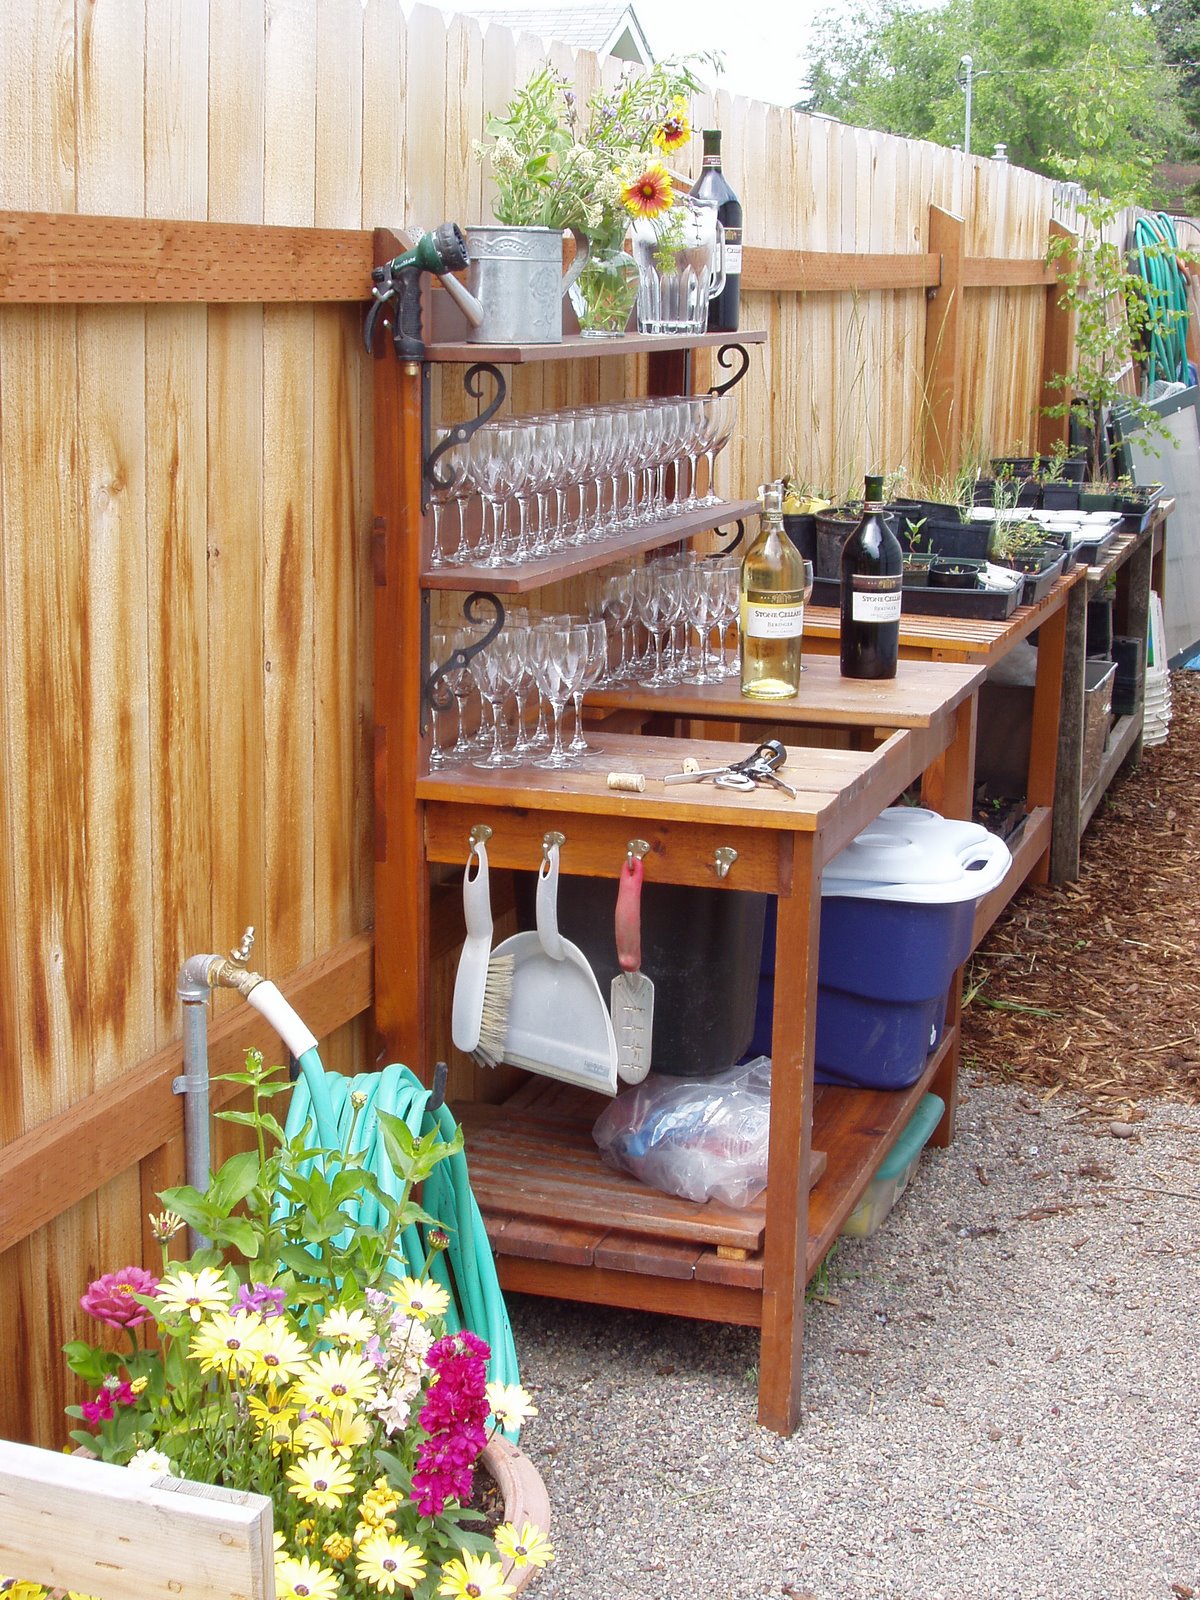 Montana Wildlife Gardener: Repurposed potting bench/ garden sideboard ...